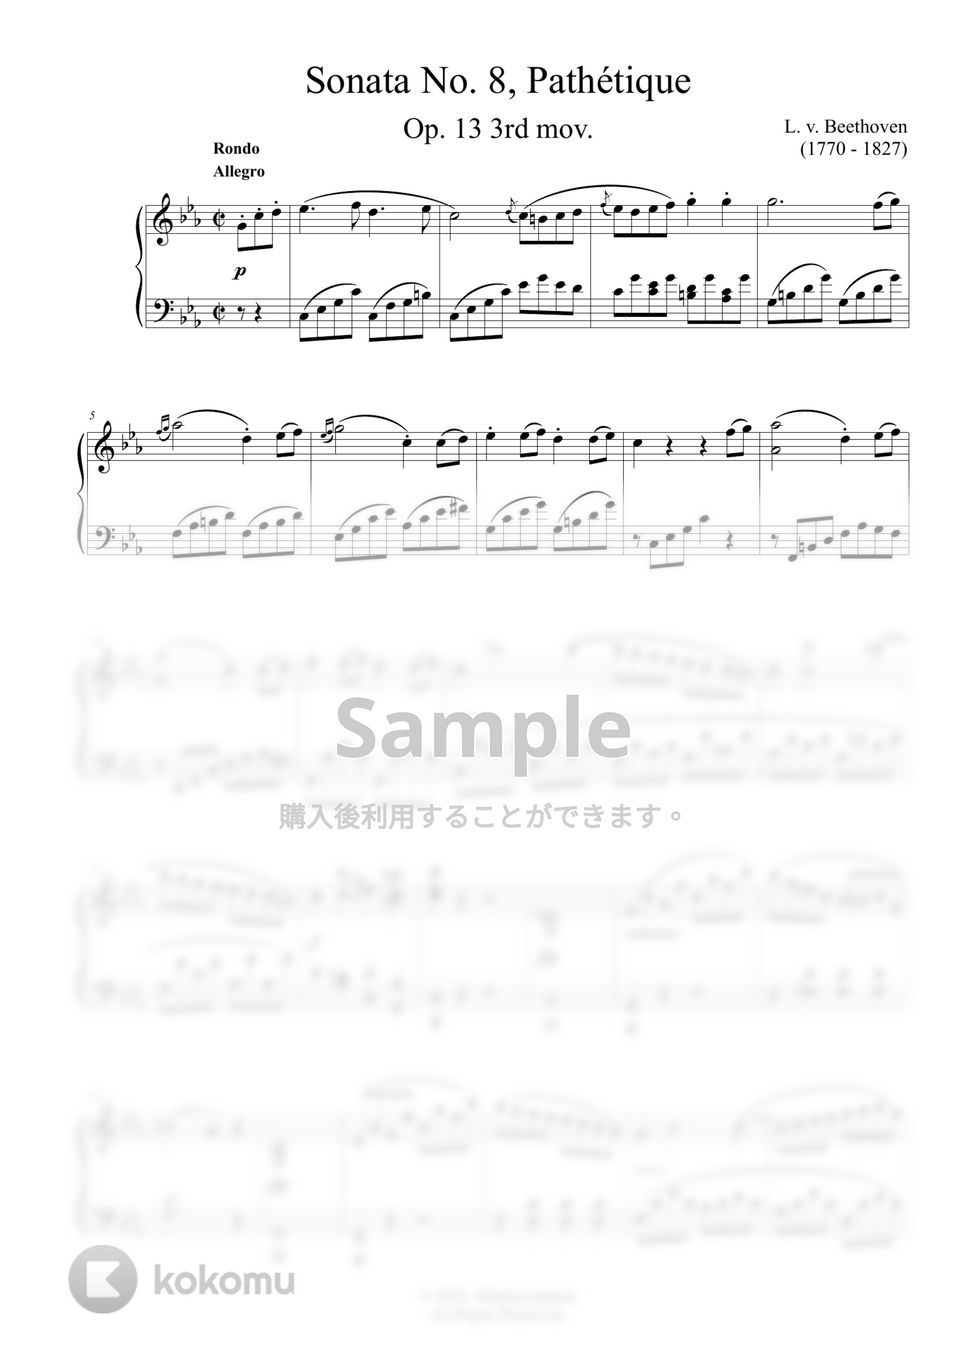 ベートーヴェン - ピアノソナタ８番「悲愴」 by ココミュオリジナル